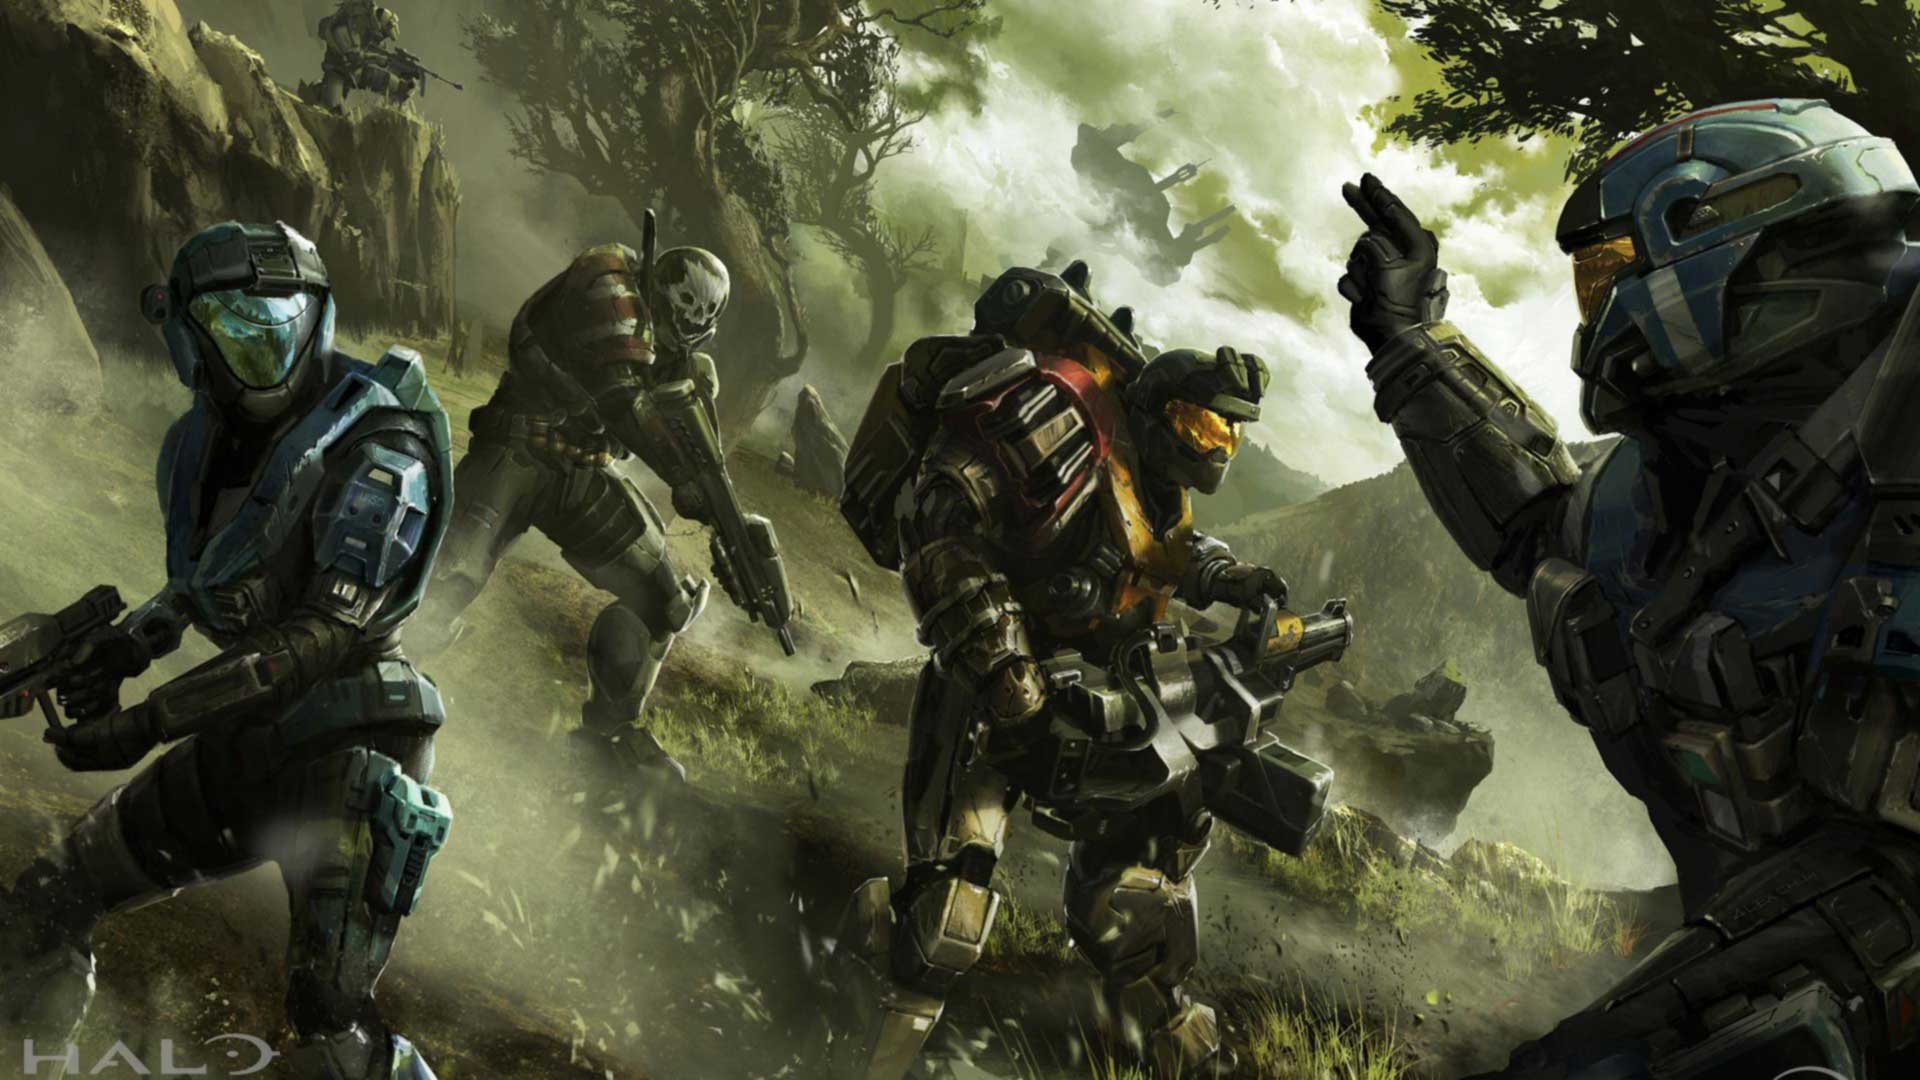 شایعه: استودیو 343 درحال ساخت نسخه جدیدی از بازی Halo است